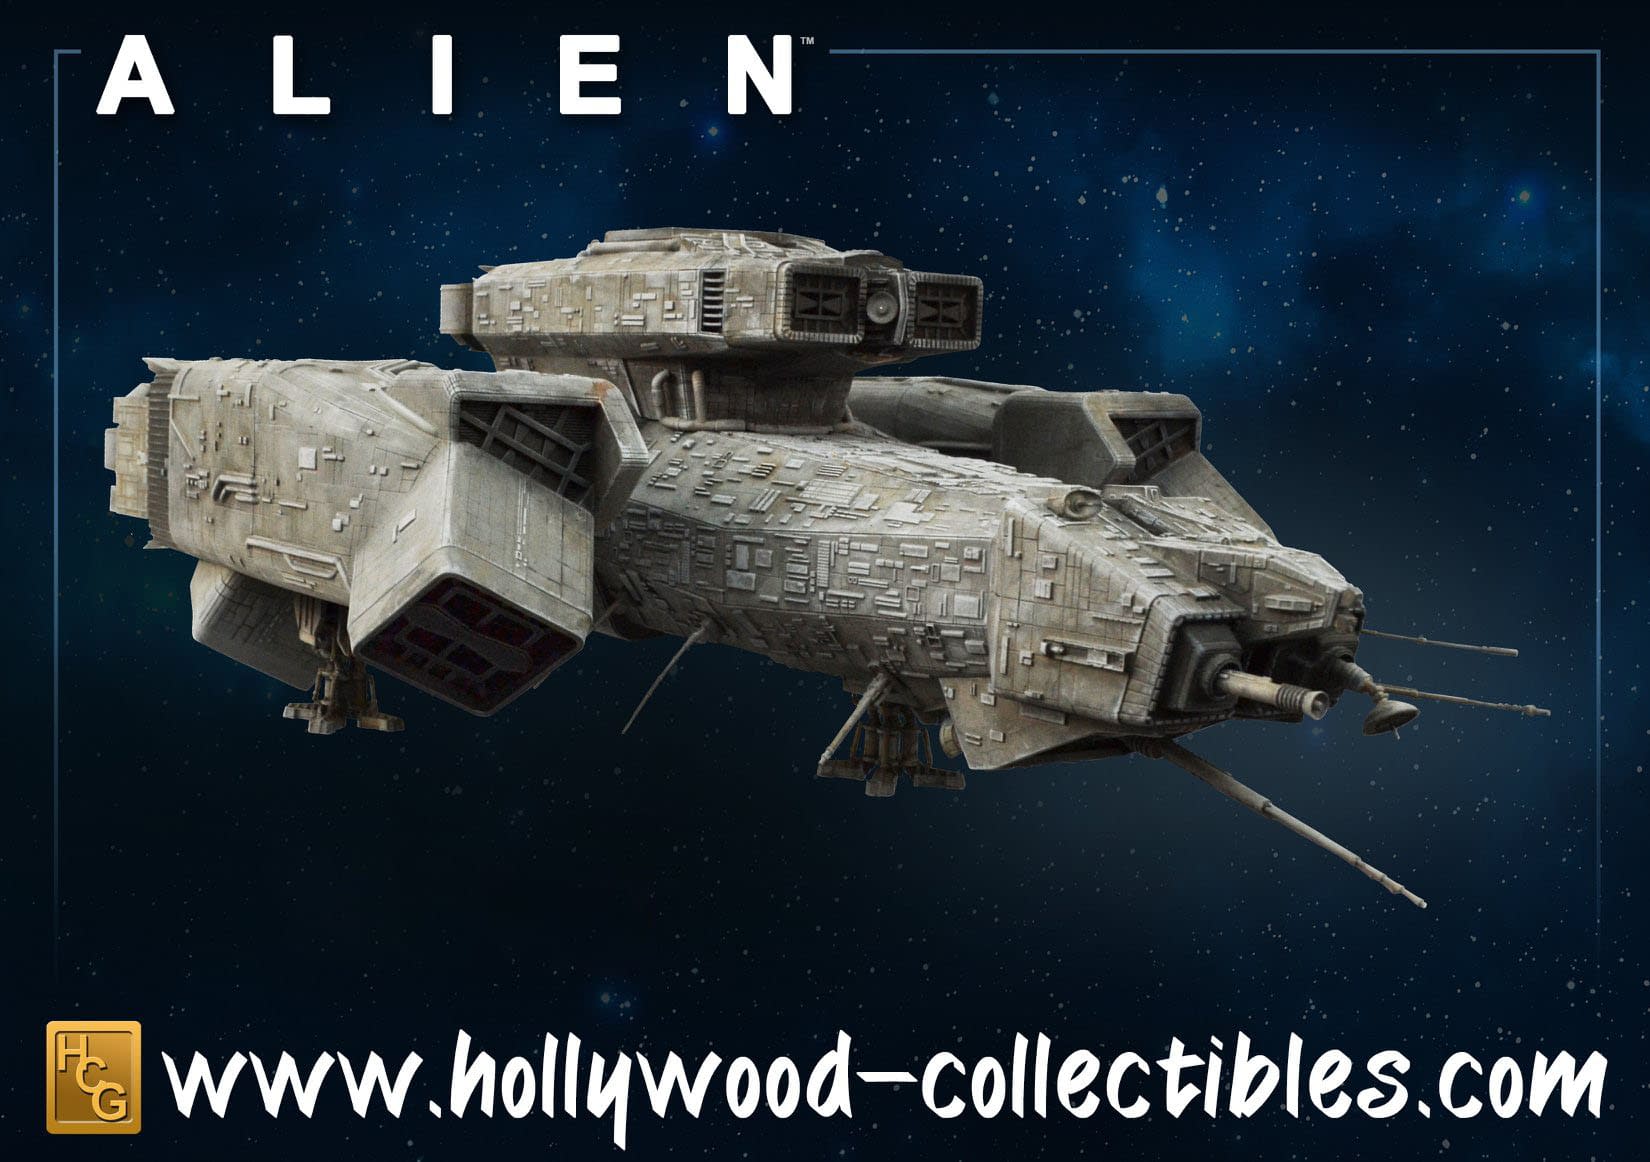 "Alien" Nostromo Lands as a New Collectible with HCG